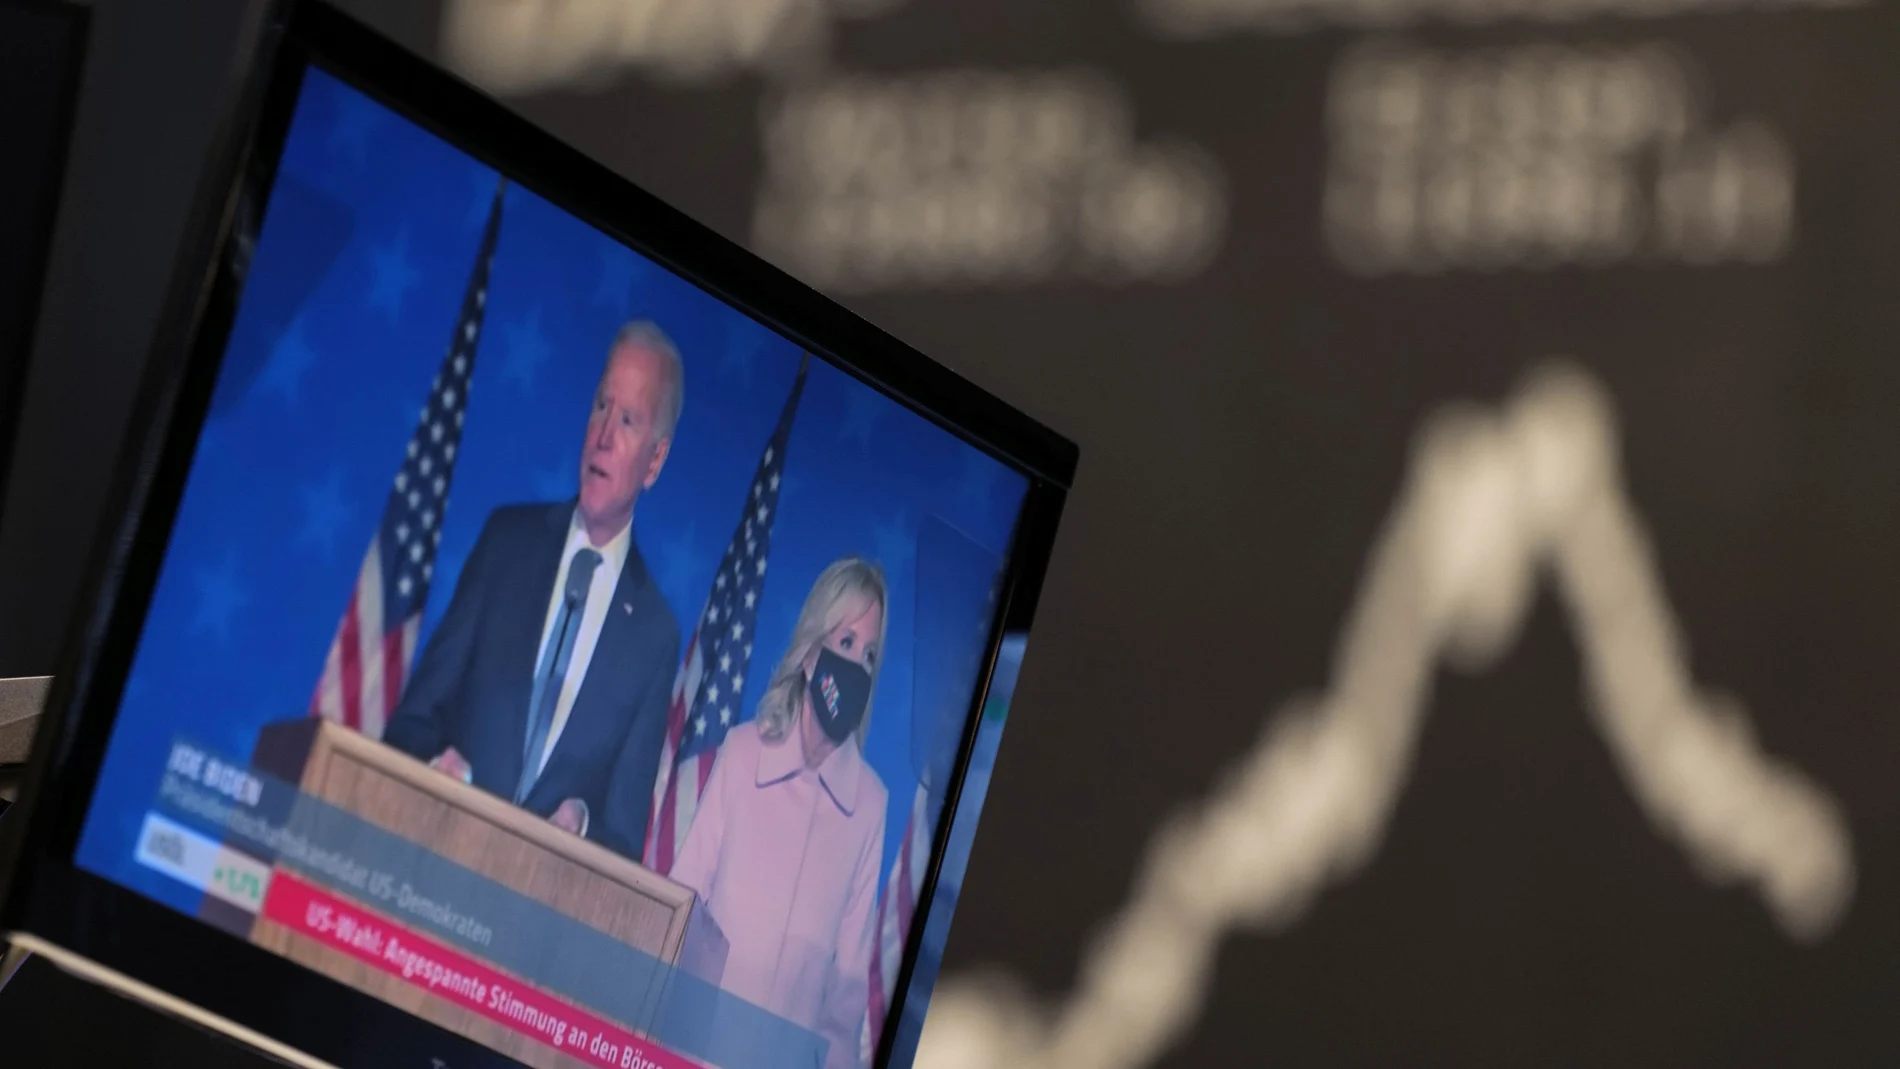 La bolsa americana celebra una posible victoria de Trump mientras las europeas prefieren a Biden